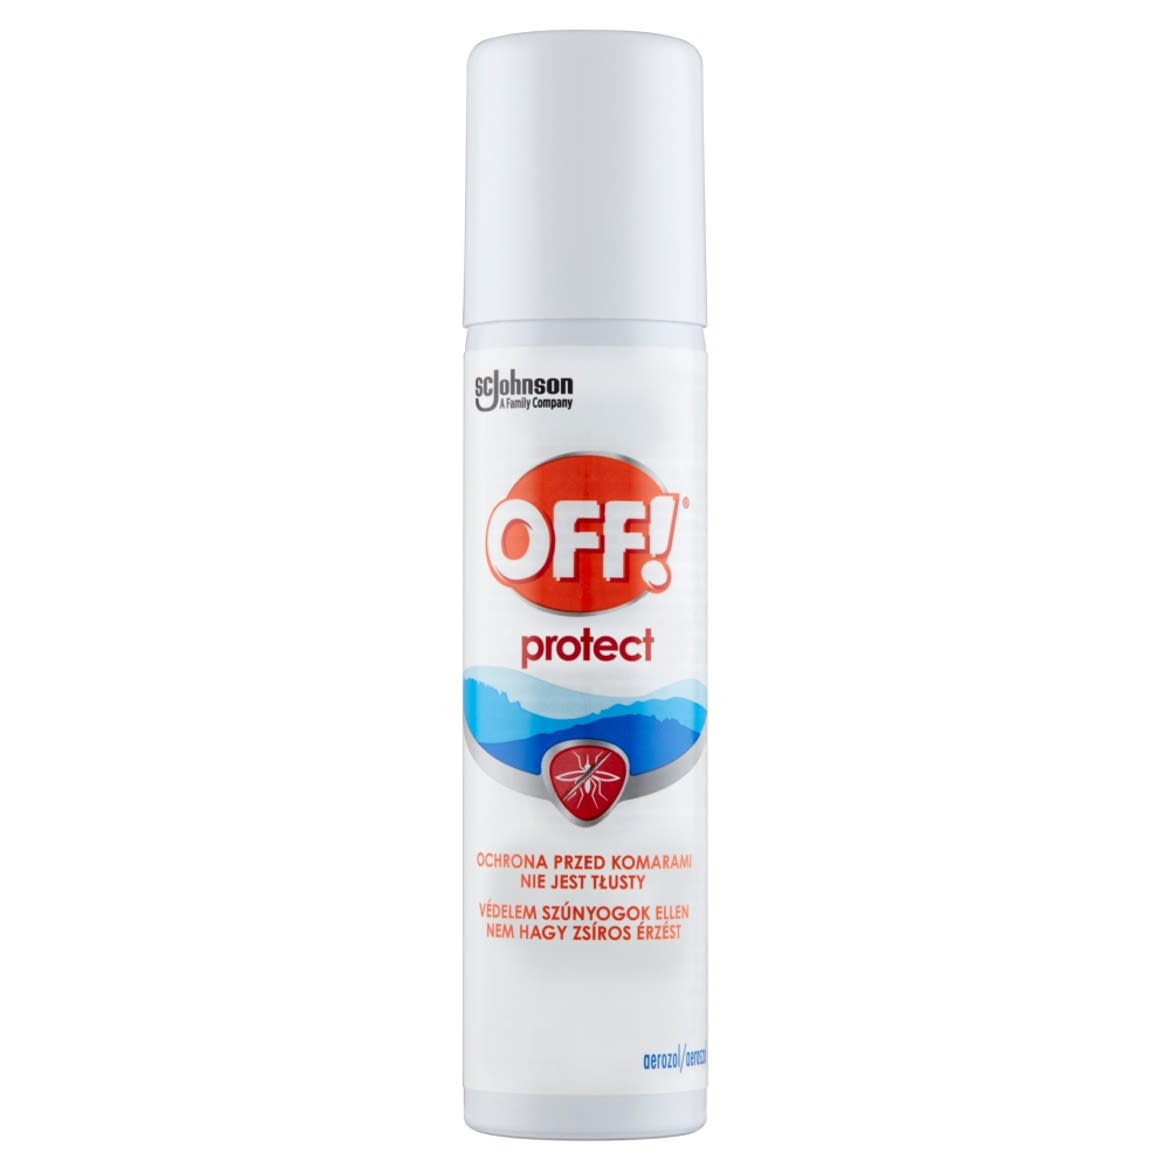 Off! Protect rovarriasztó aeroszol 100 ml